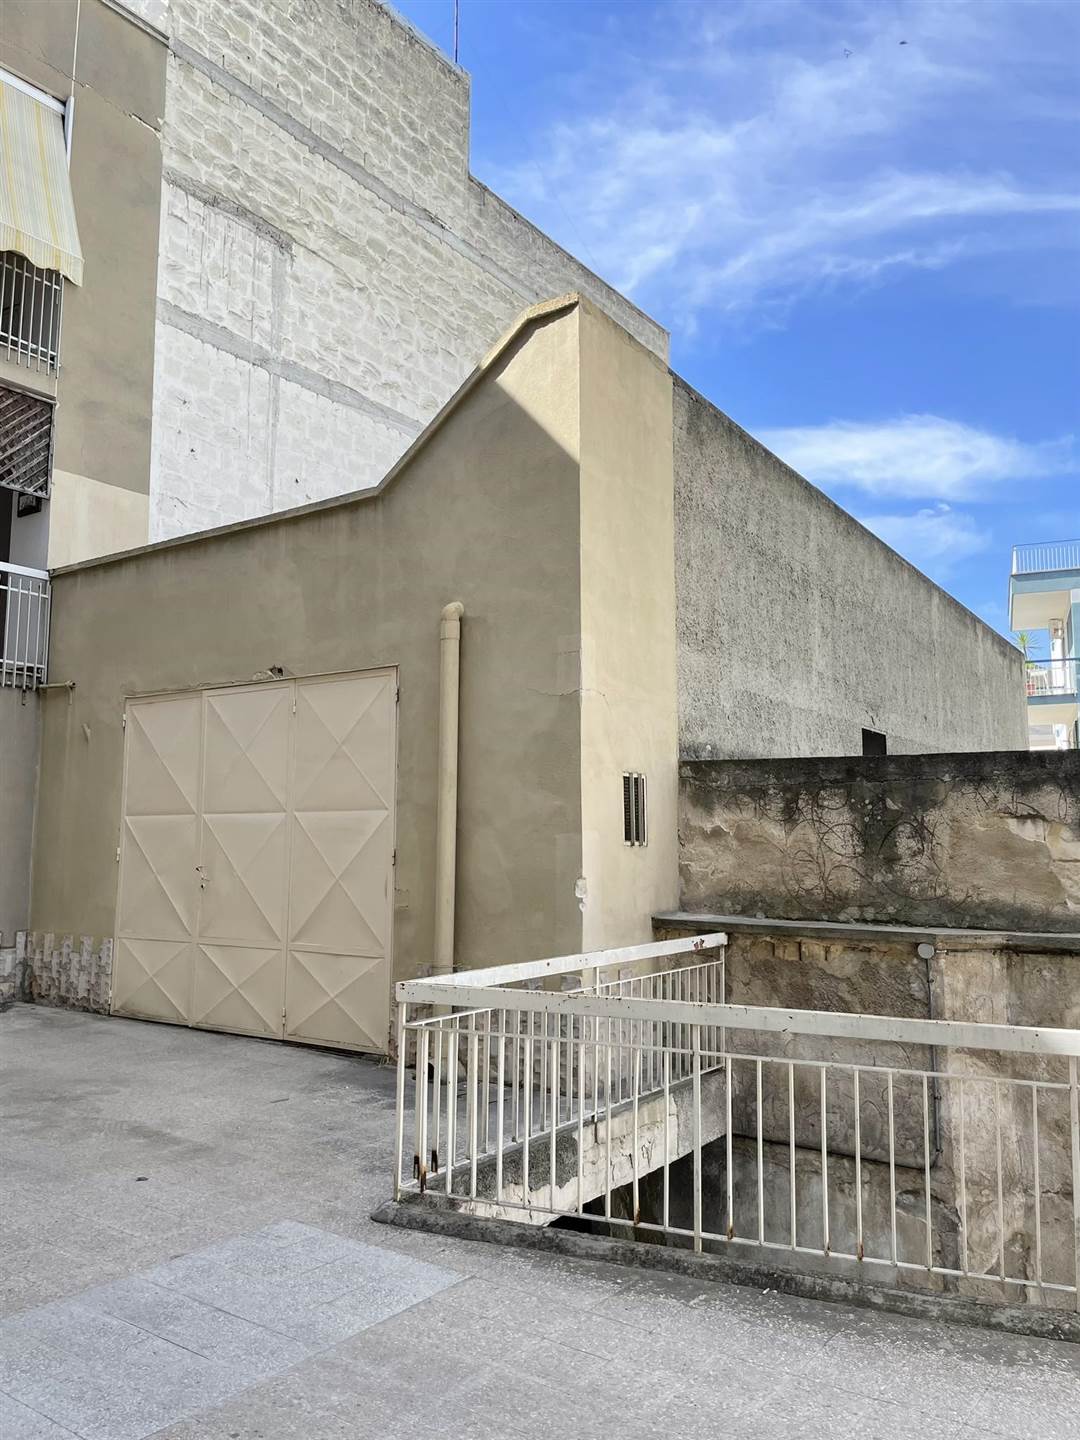 DESCRIZIONE: In Via Gustavo Modena, nei pressi di Corso Garibaldi, proponiamo la vendita di un ampio e comodo garage a piano terra, della superficie 